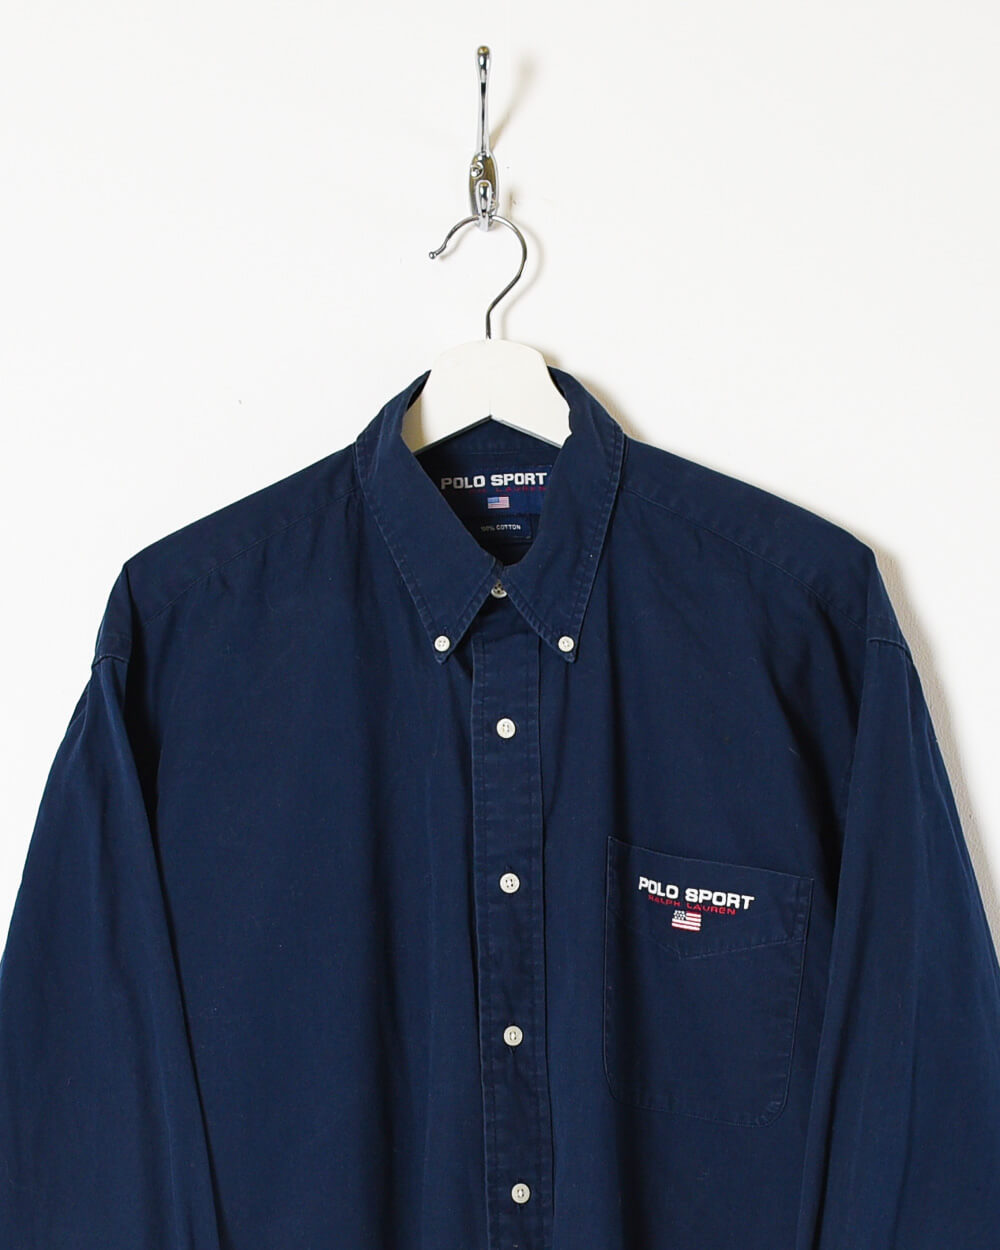 Navy Ralph Lauren Polo Sport Shirt - X-Large